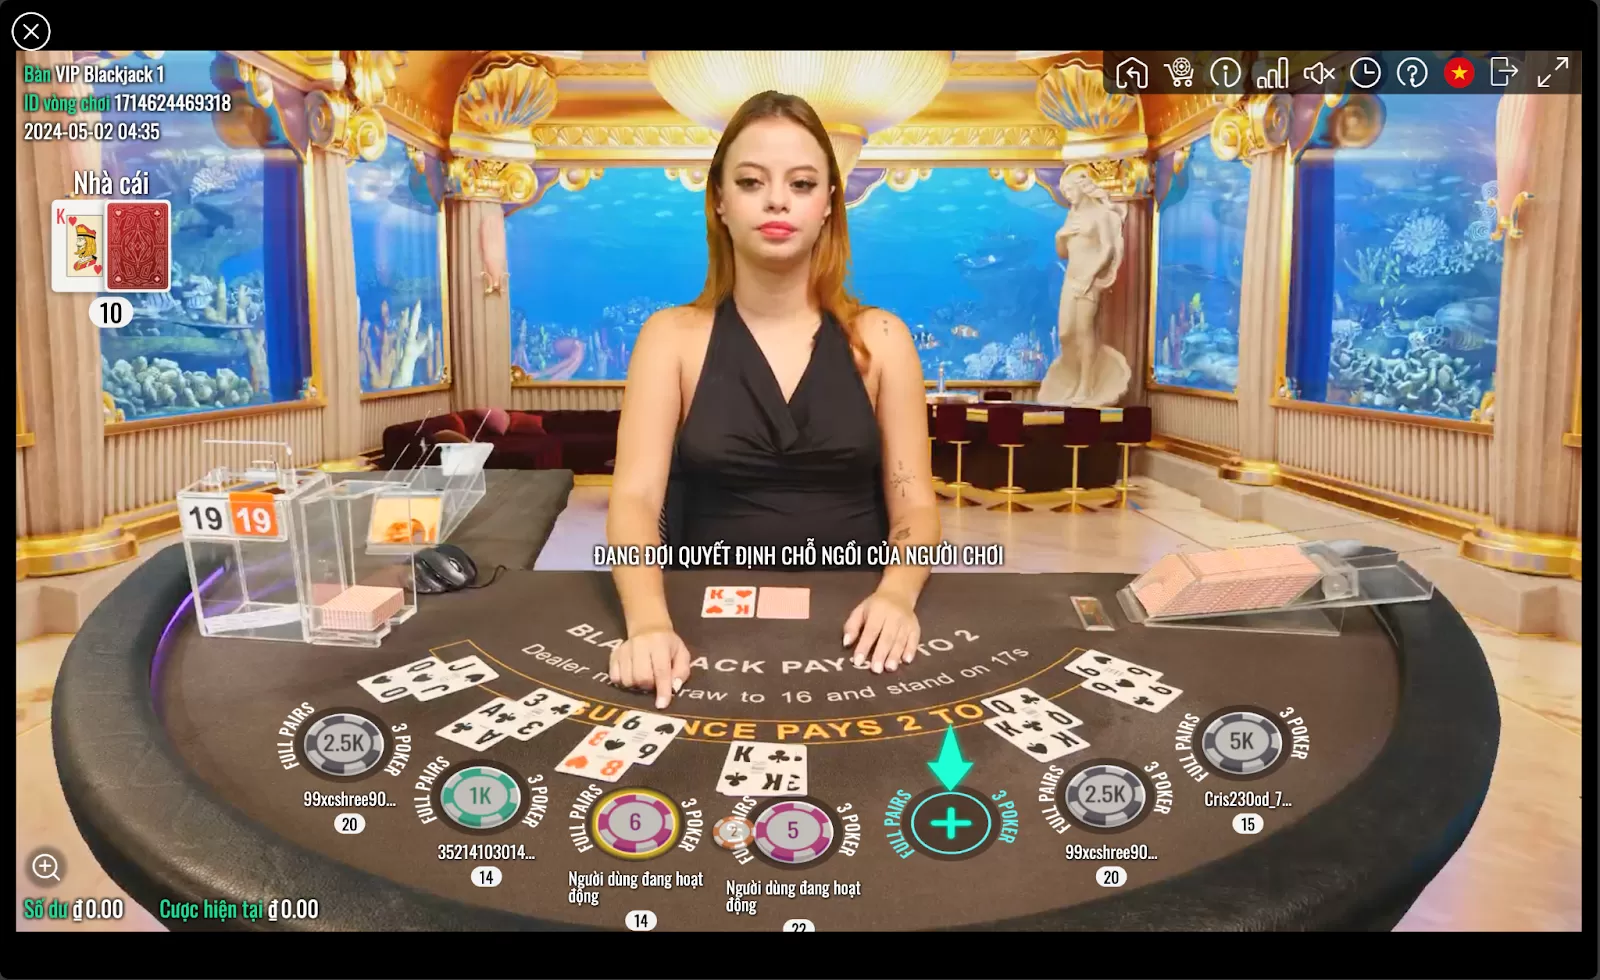 Hướng dẫn cách chơi Xì dách (Blackjack) Live Casino tại nhà cái Fabet